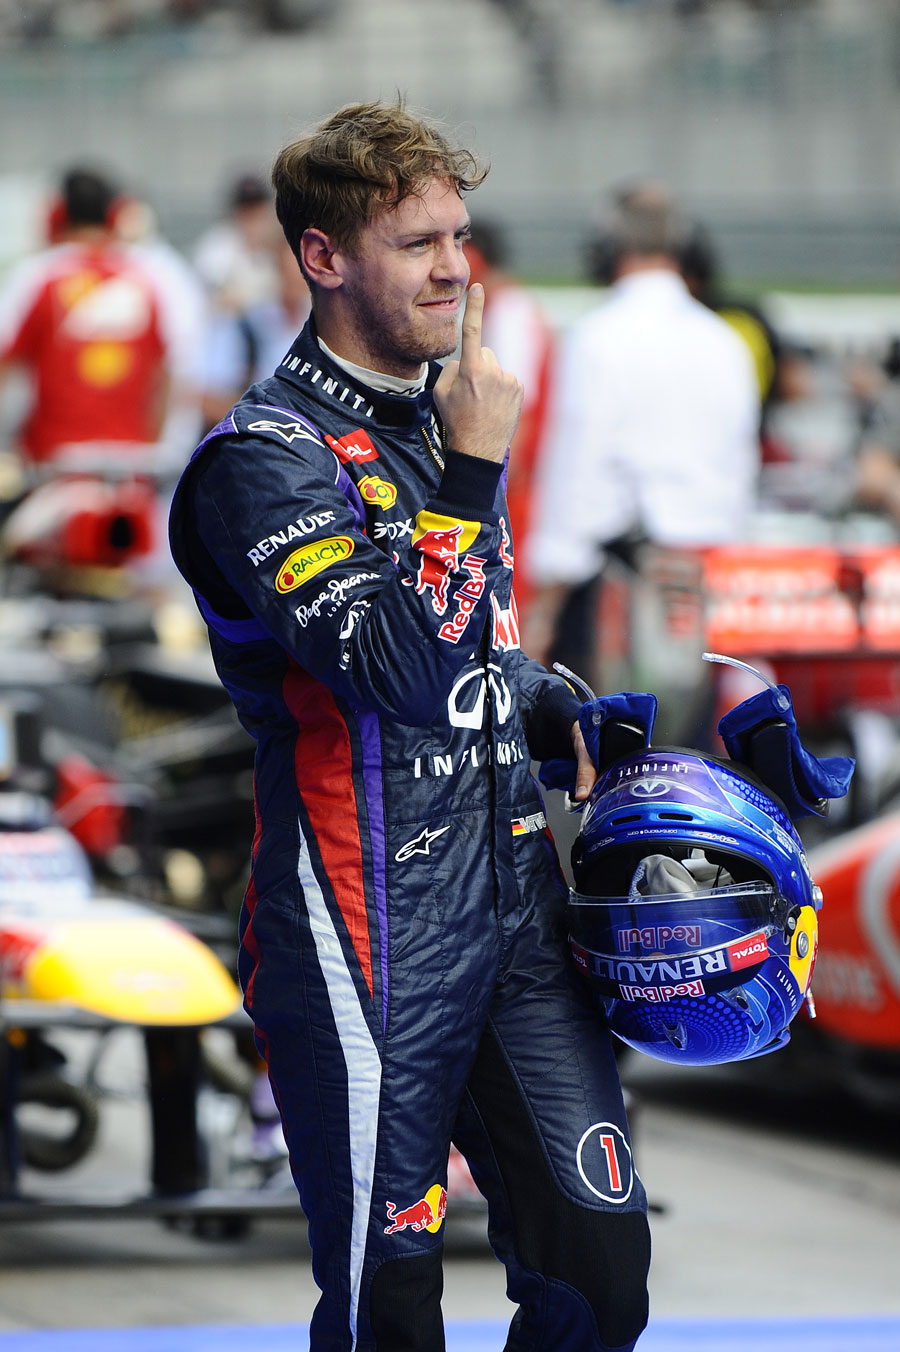 The customary Sebastian Vettel celebration after qualifying on pole